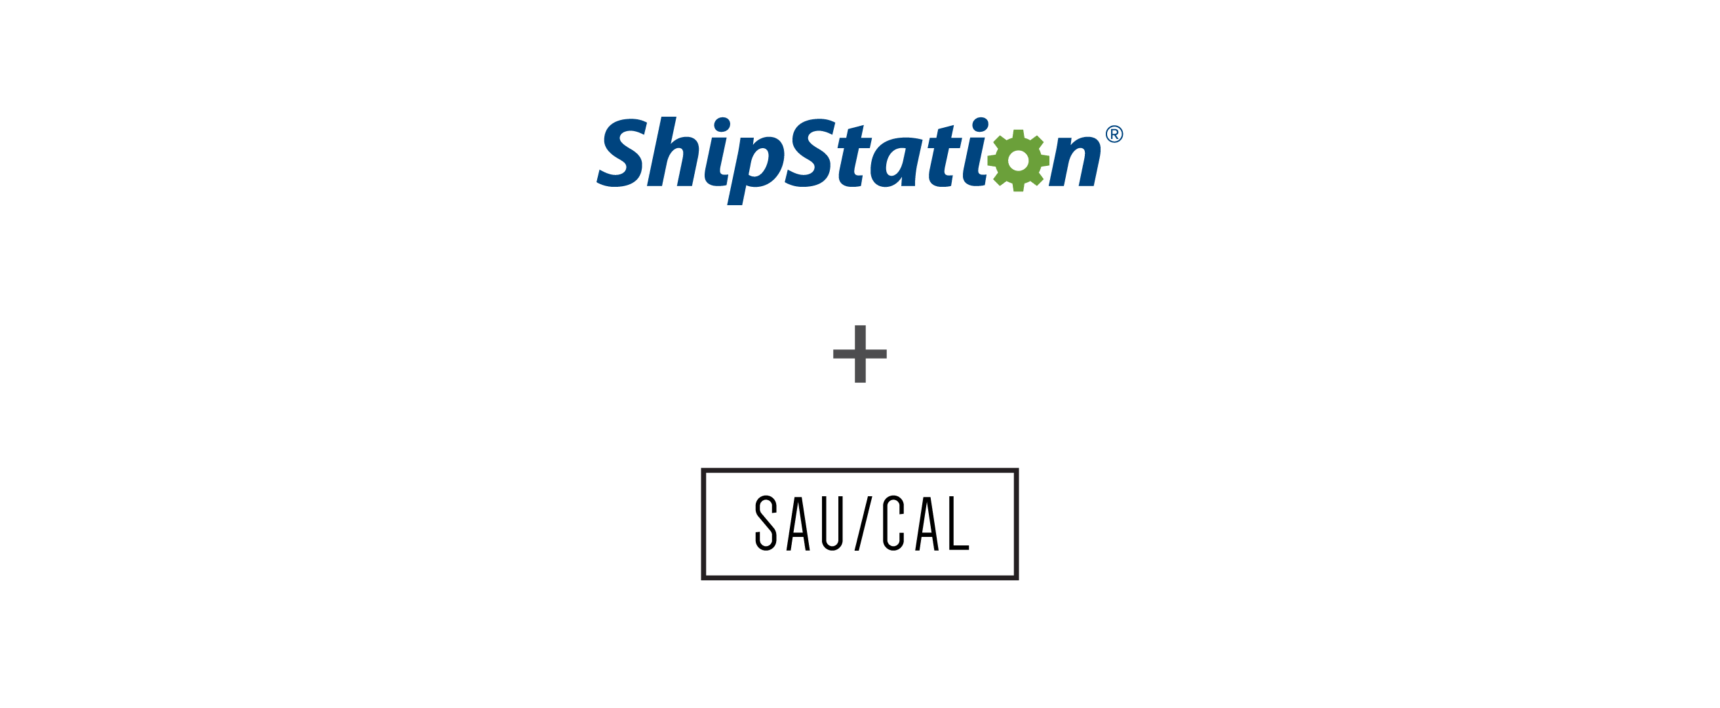 ShipStation and Saucal